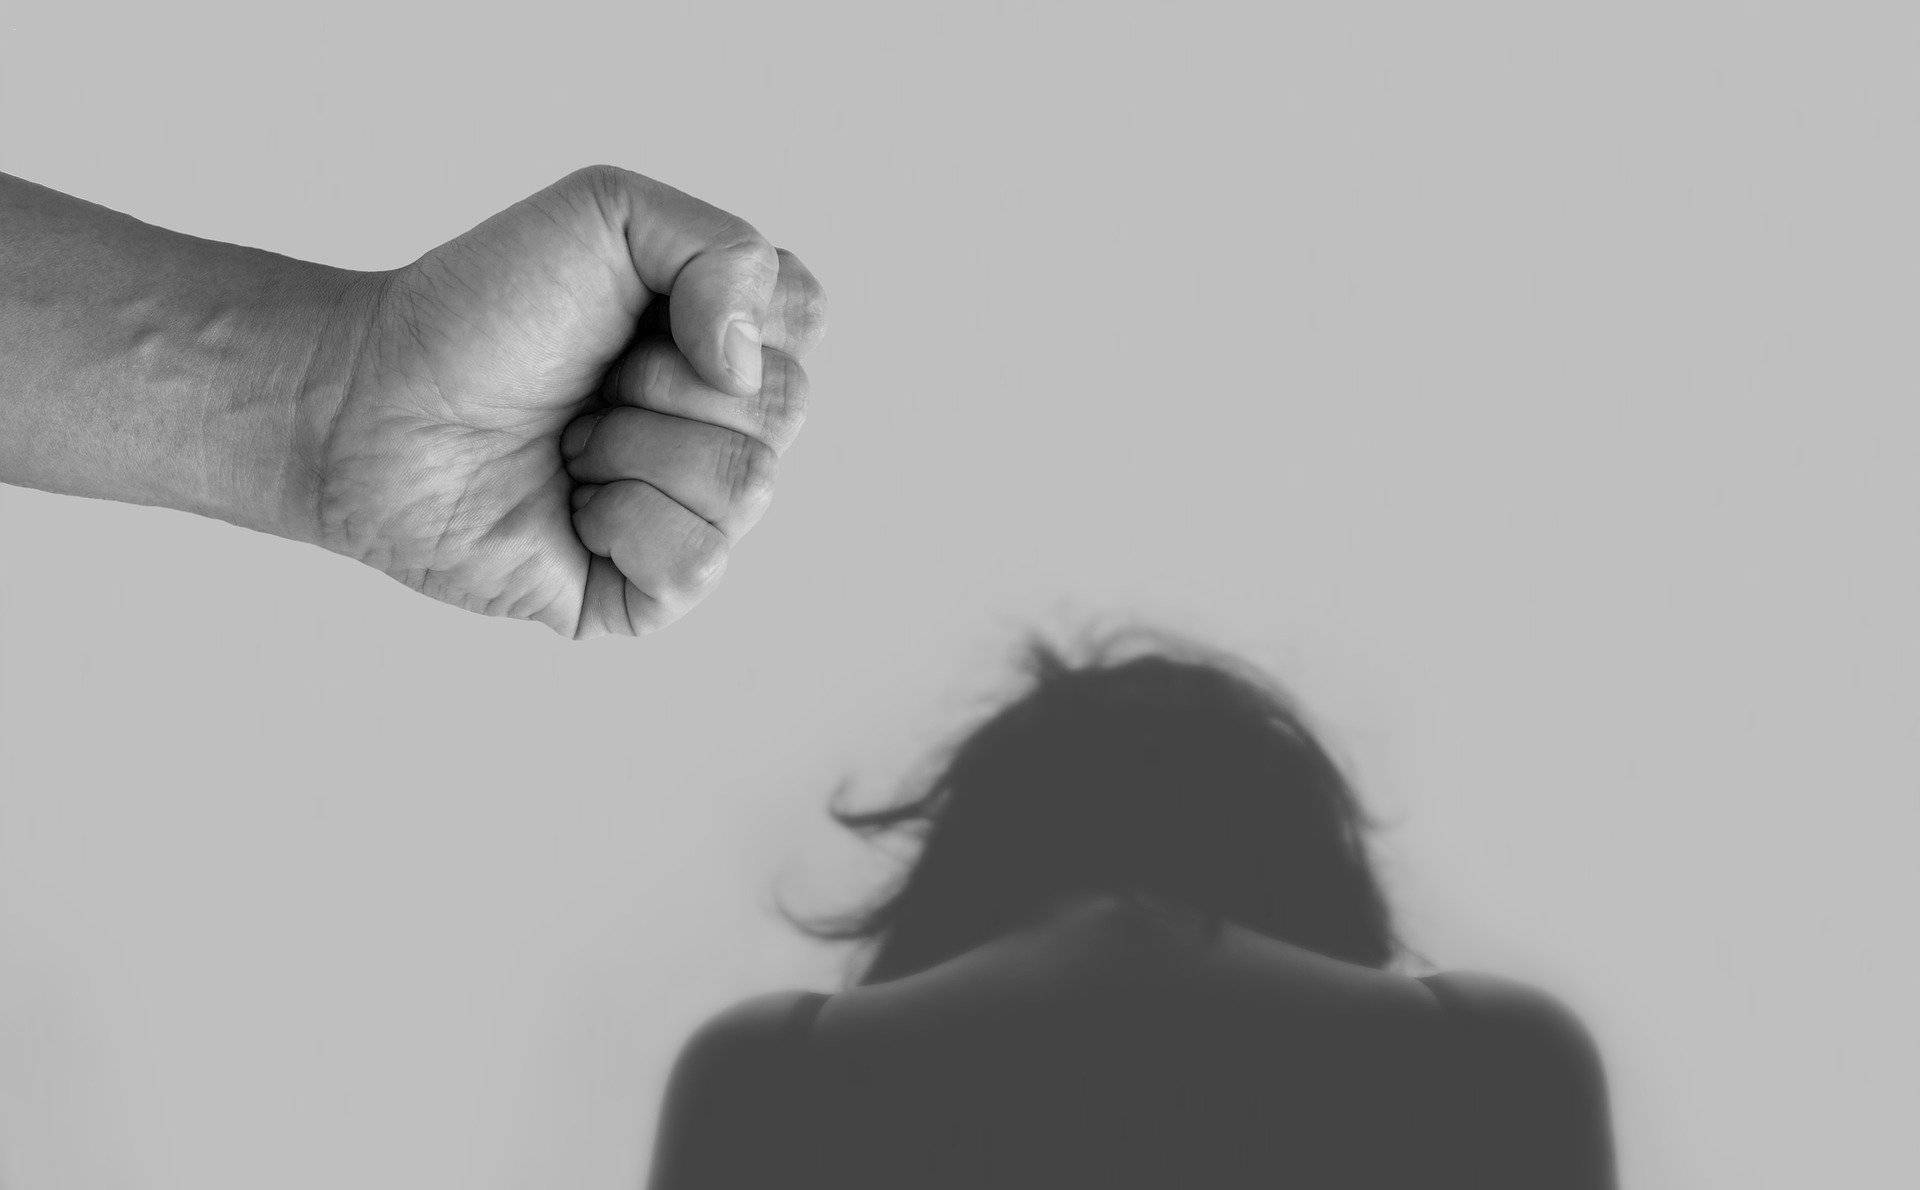 Erfahrene Beraterinnen der Interventionsstelle gegen häusliche Gewalt unterstützen: SKFM Mettmann: Beratungsangebot nach häuslicher Gewalt